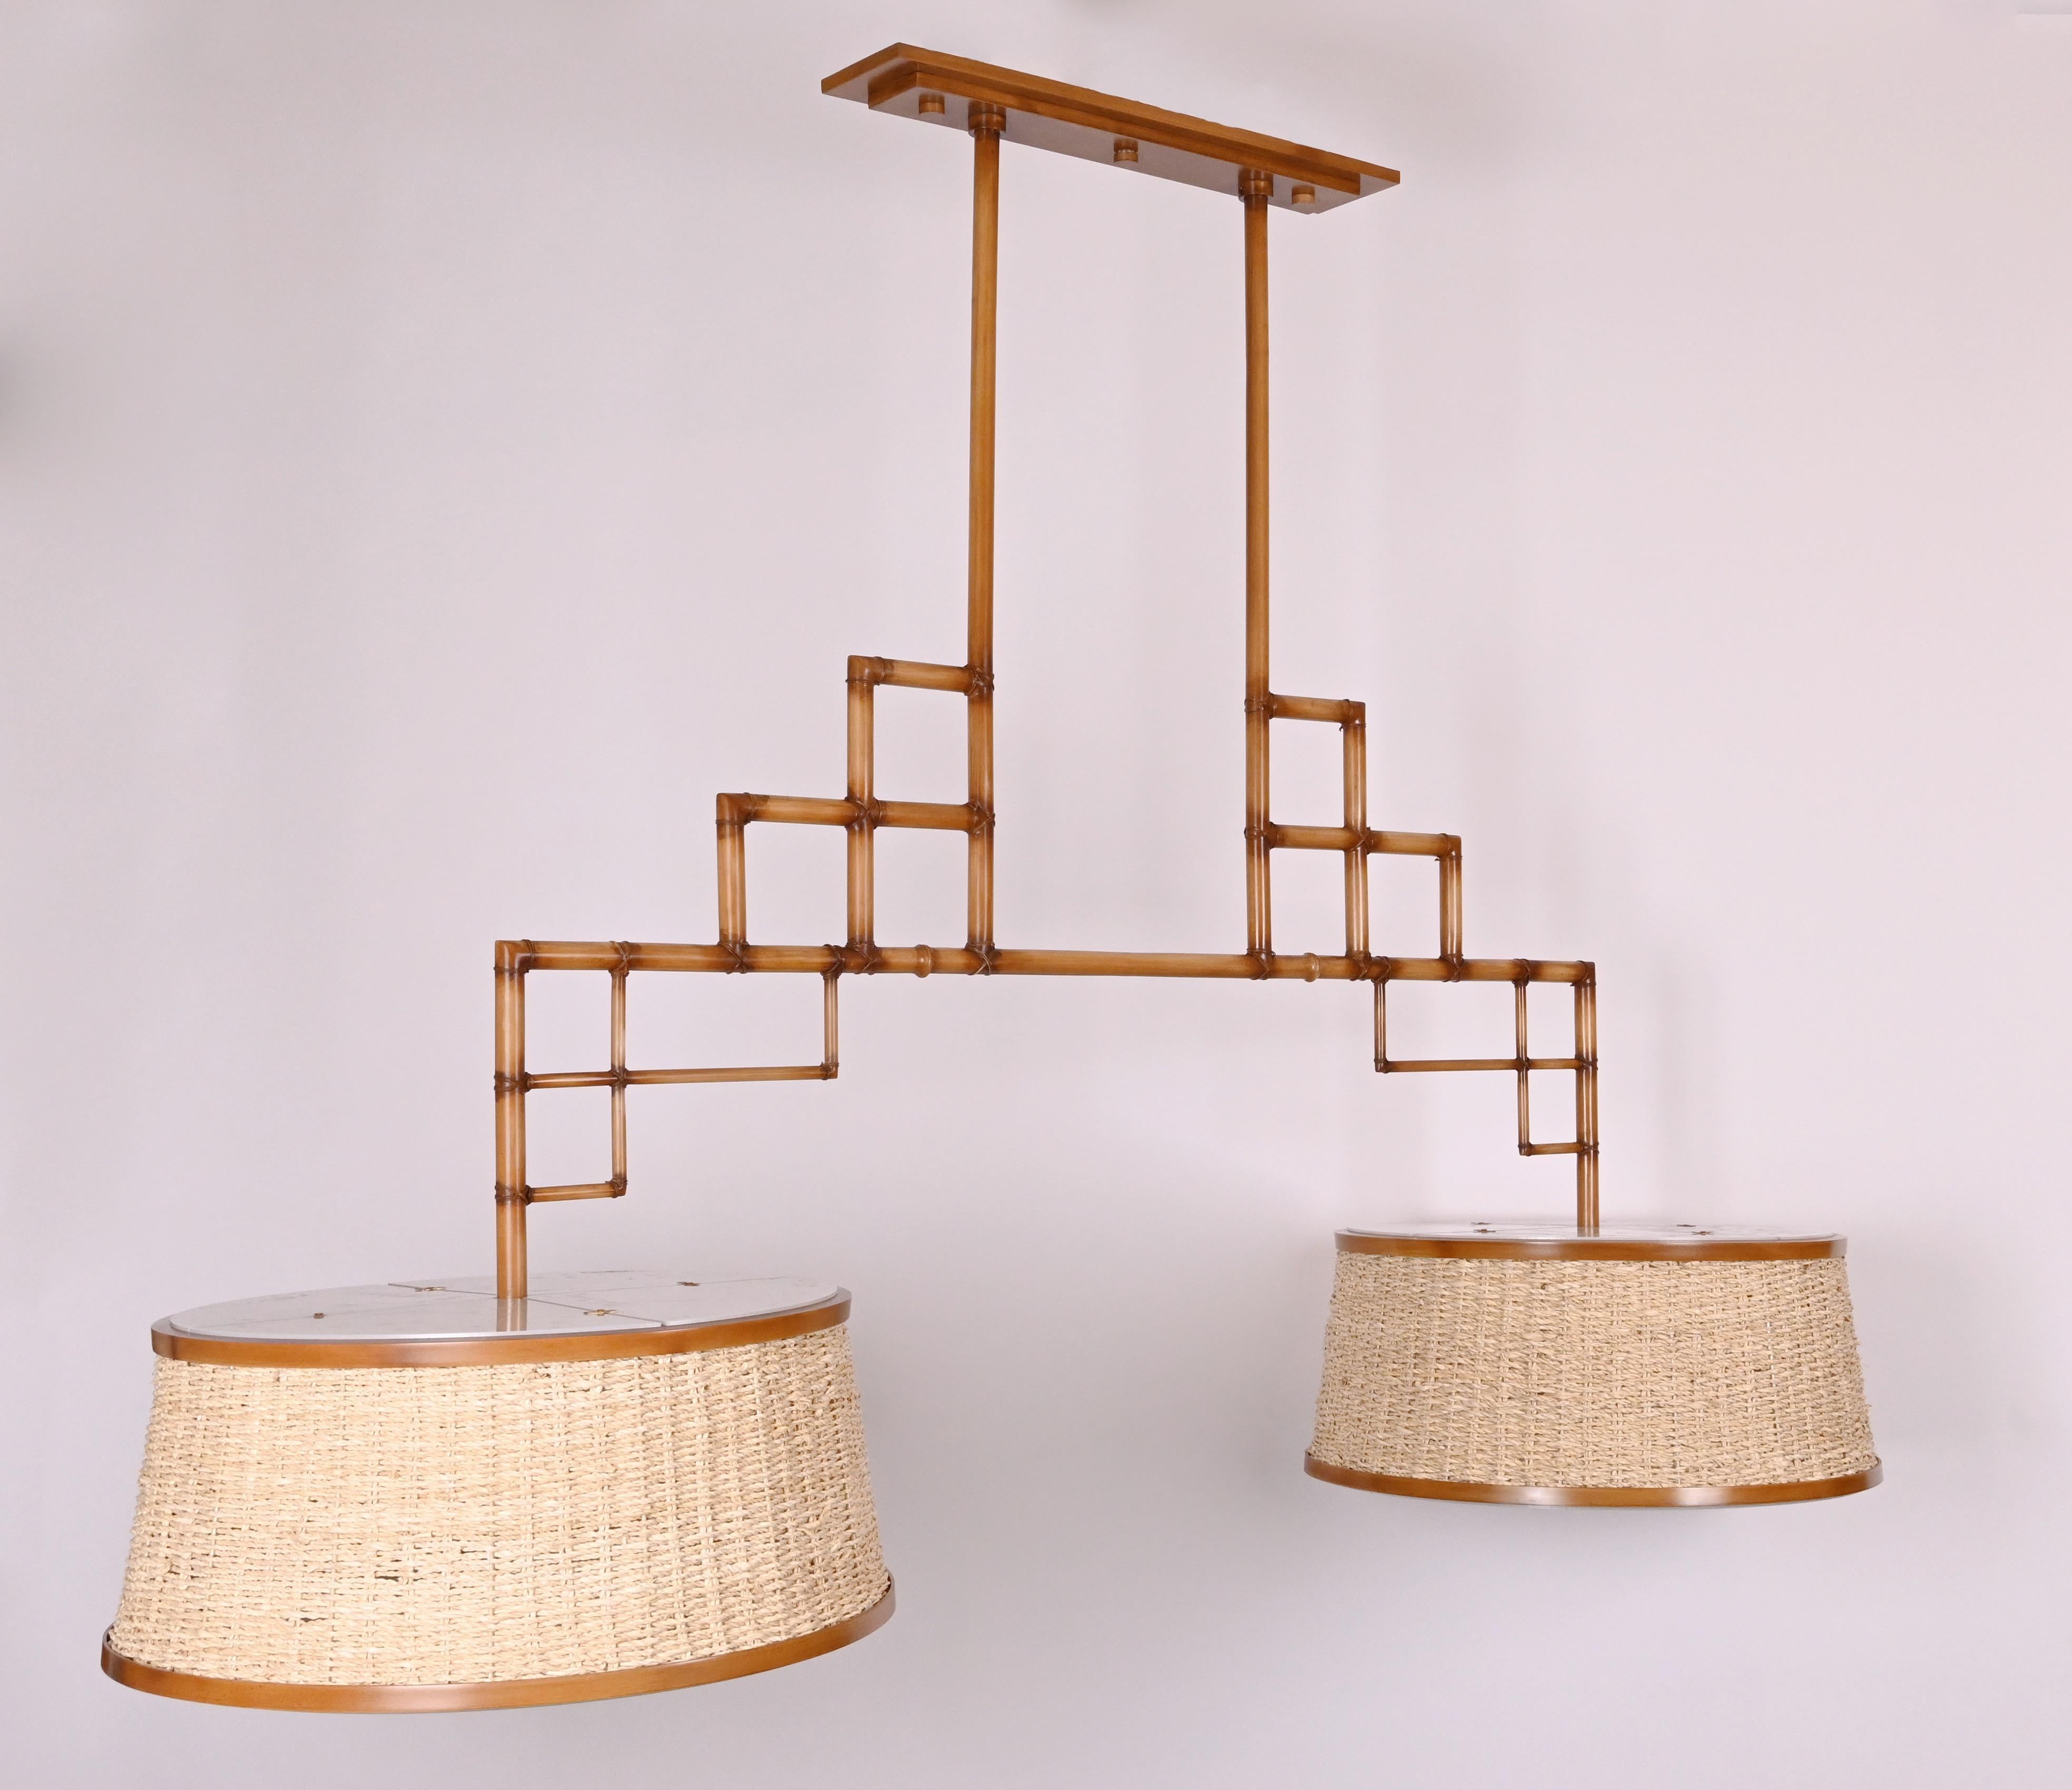 David Duncan Studio Bamboo Billiard Fixture, avec un cadre géométrique complexe formé par des sections croisées de faux bambou peint à la main en laiton, avec deux sources lumineuses d'abat-jour en osier émettant un total de huit prises Edison